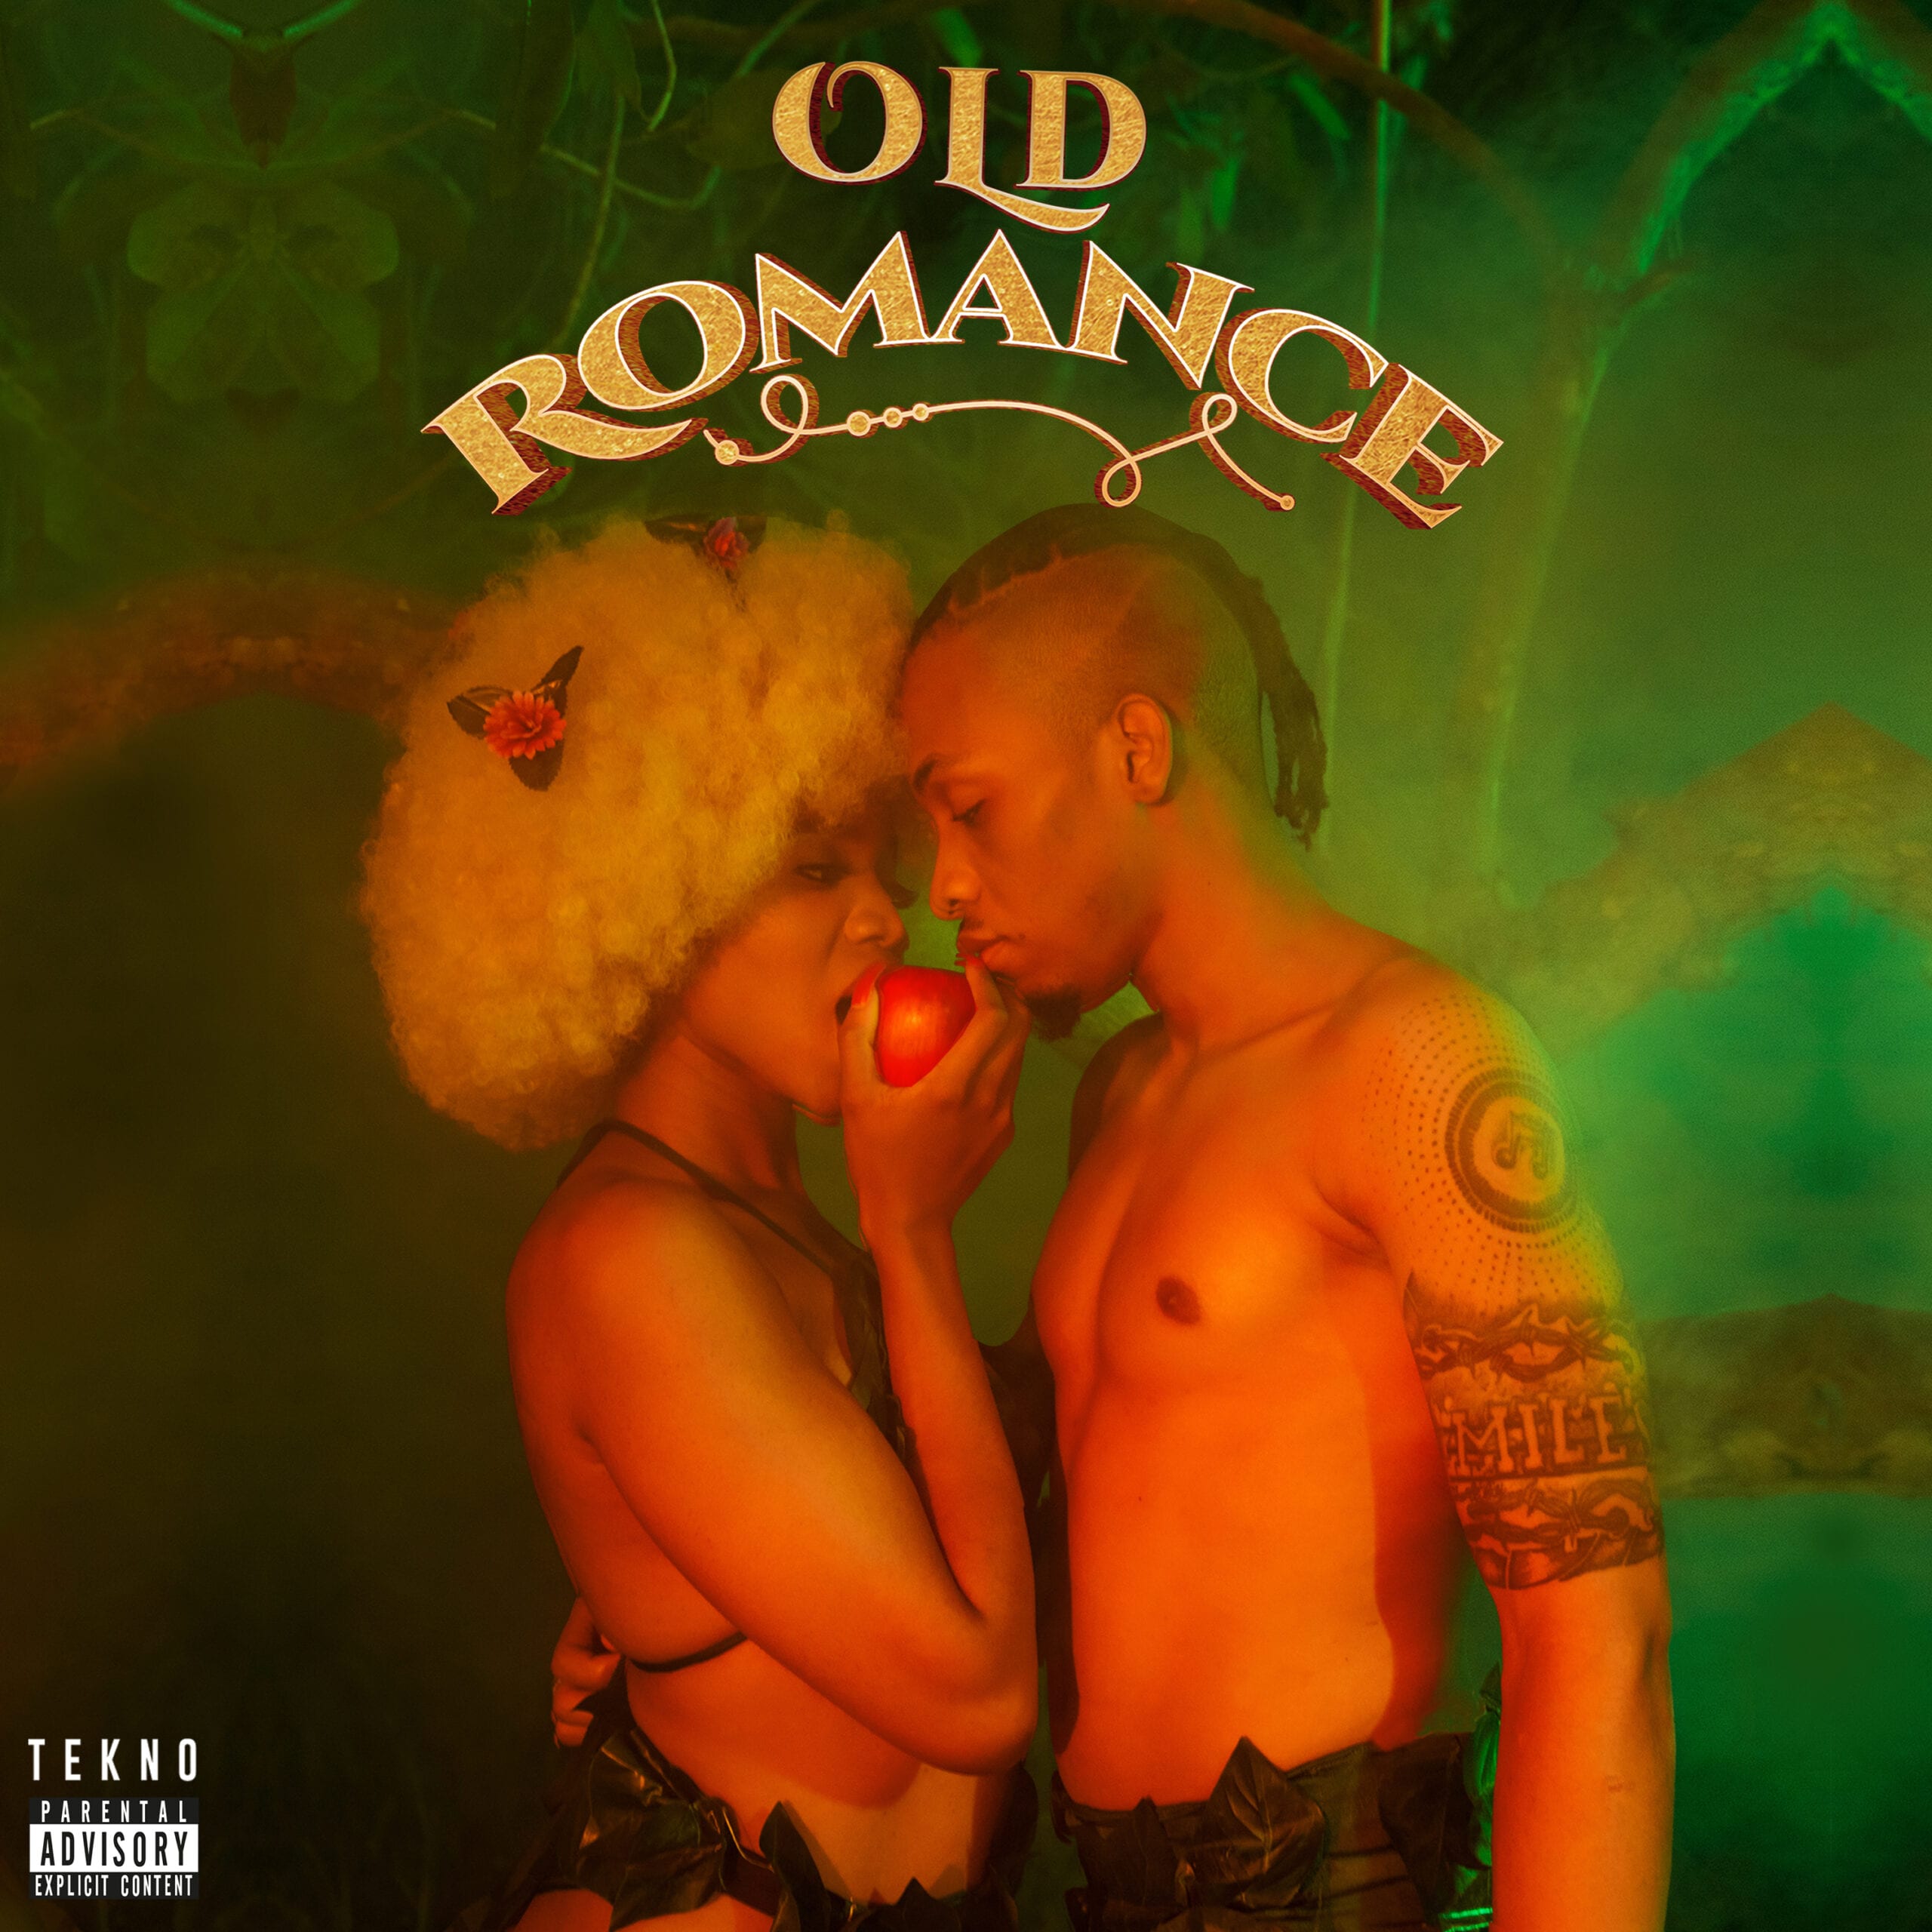 TEKNO Old Romance Album Cover